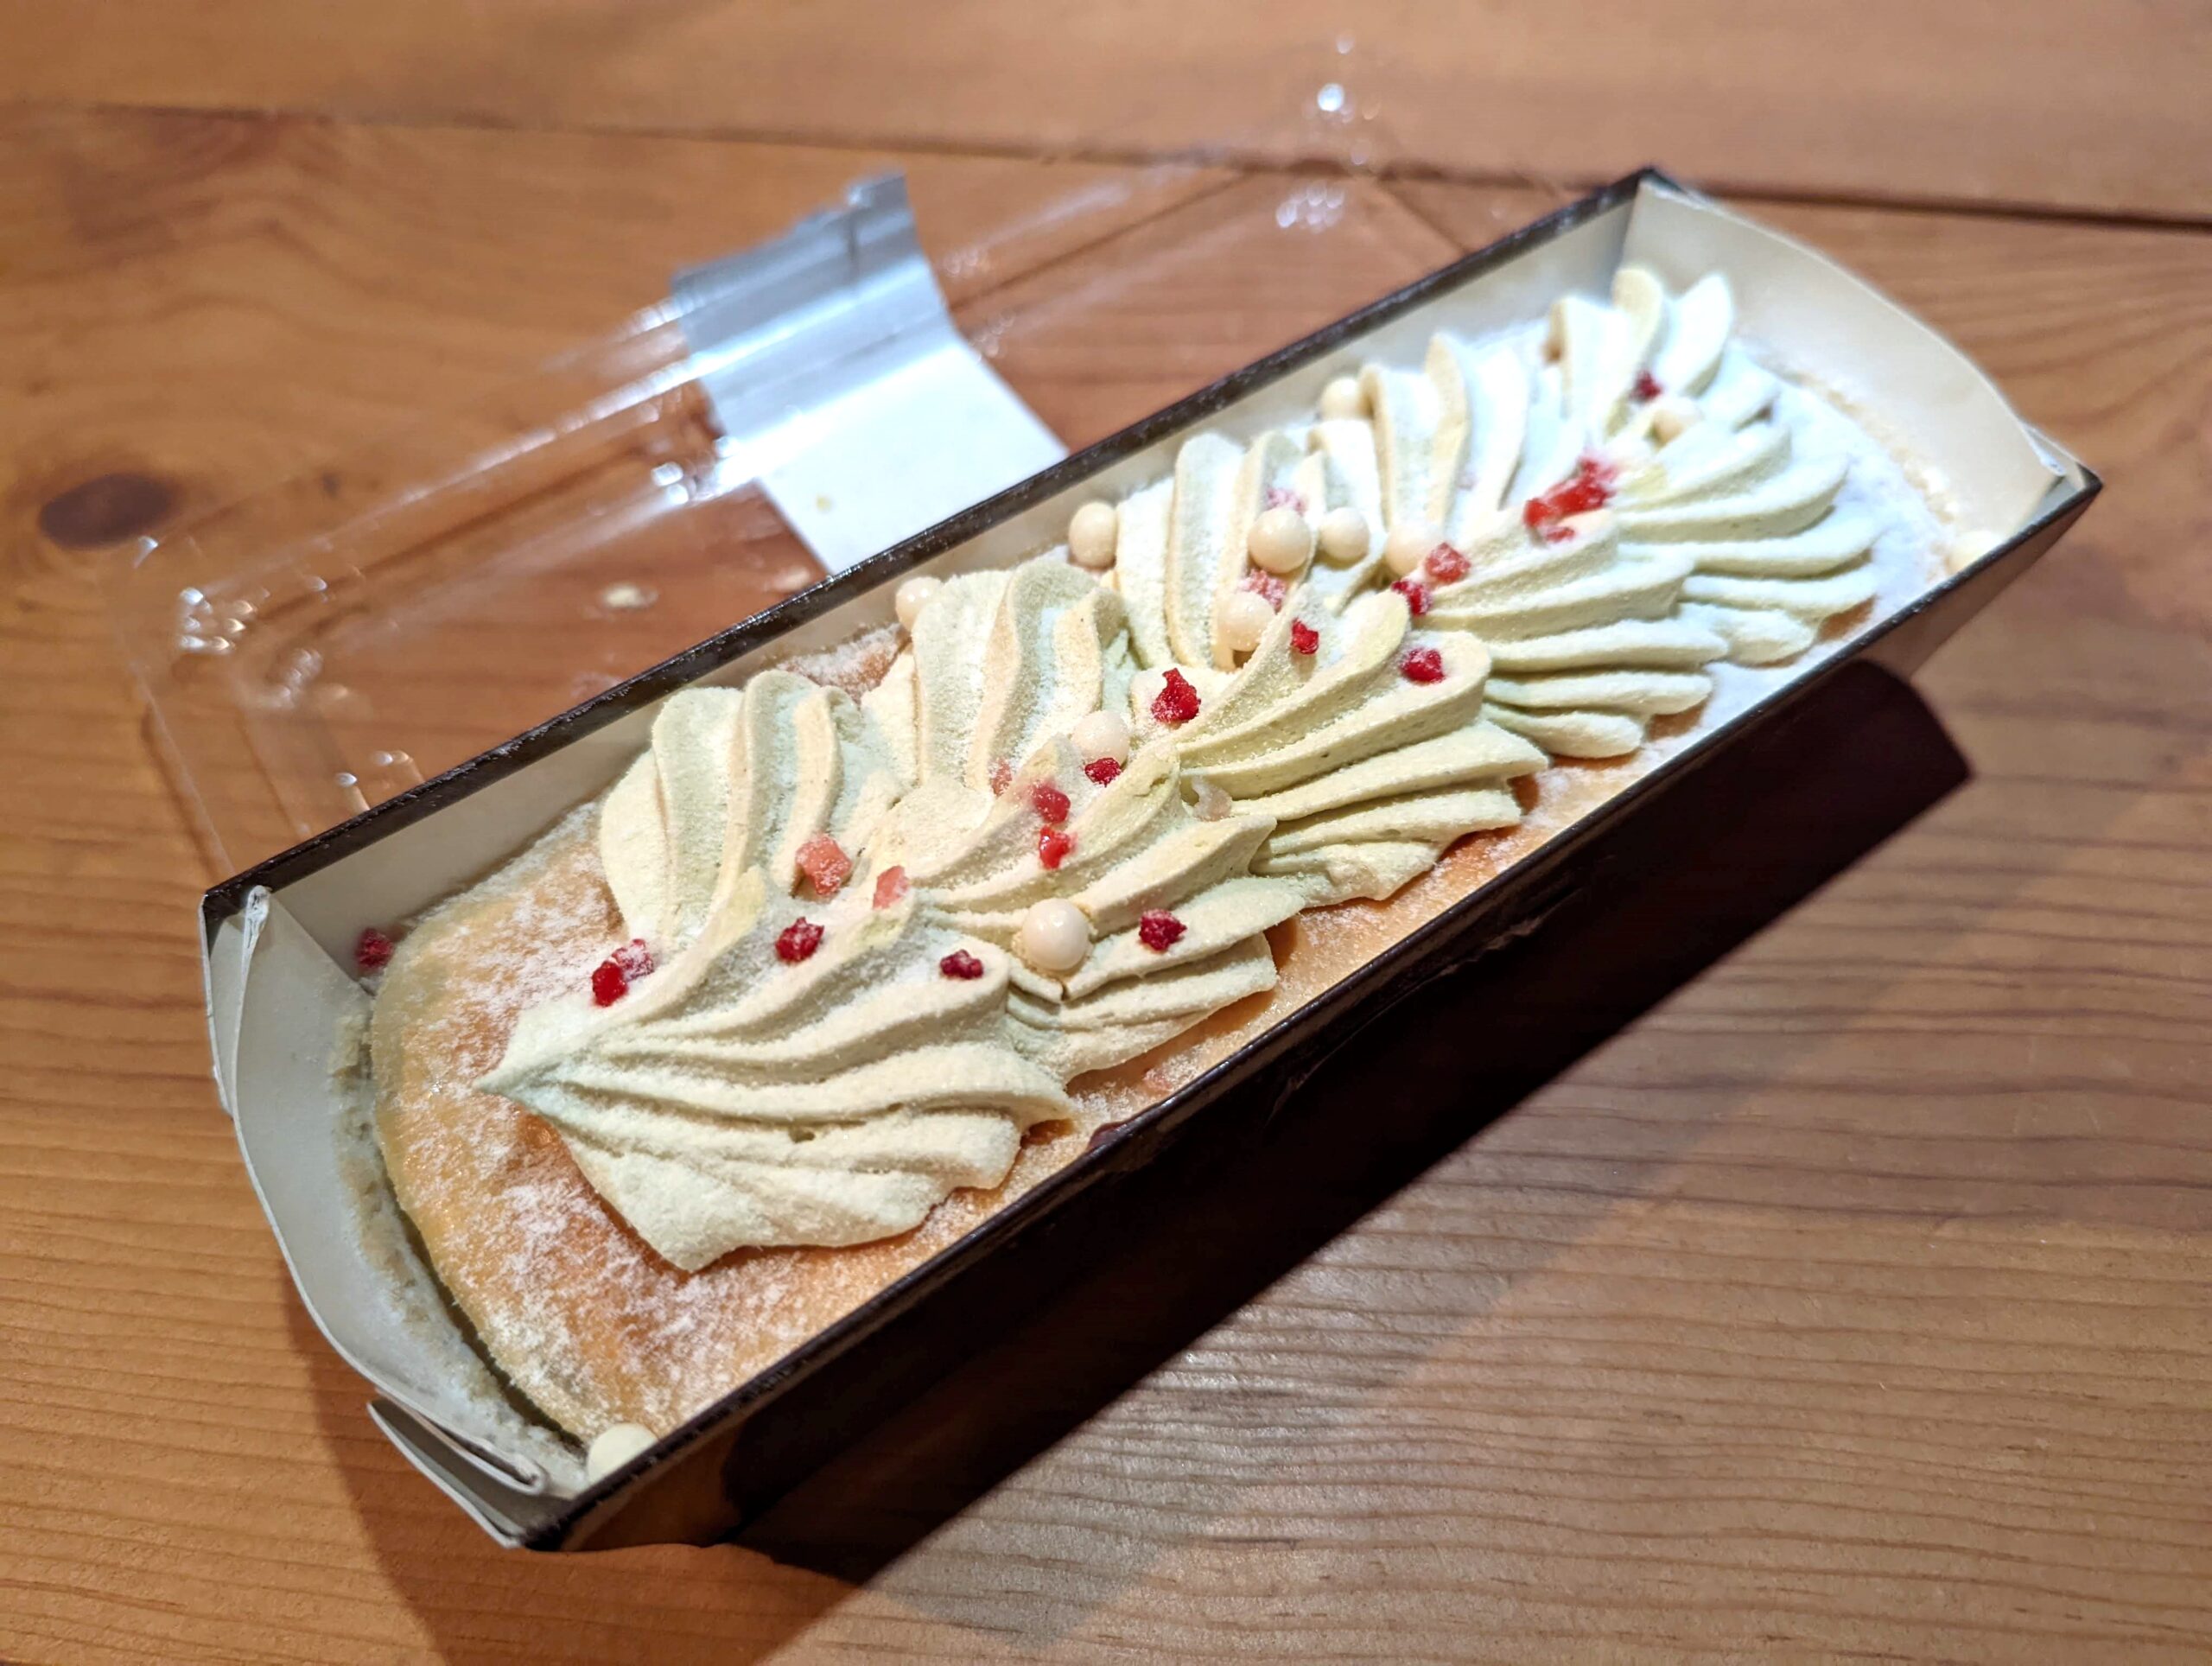 成城石井「3種ベリーとピスタチオのプレミアムチーズケーキ」 (11)